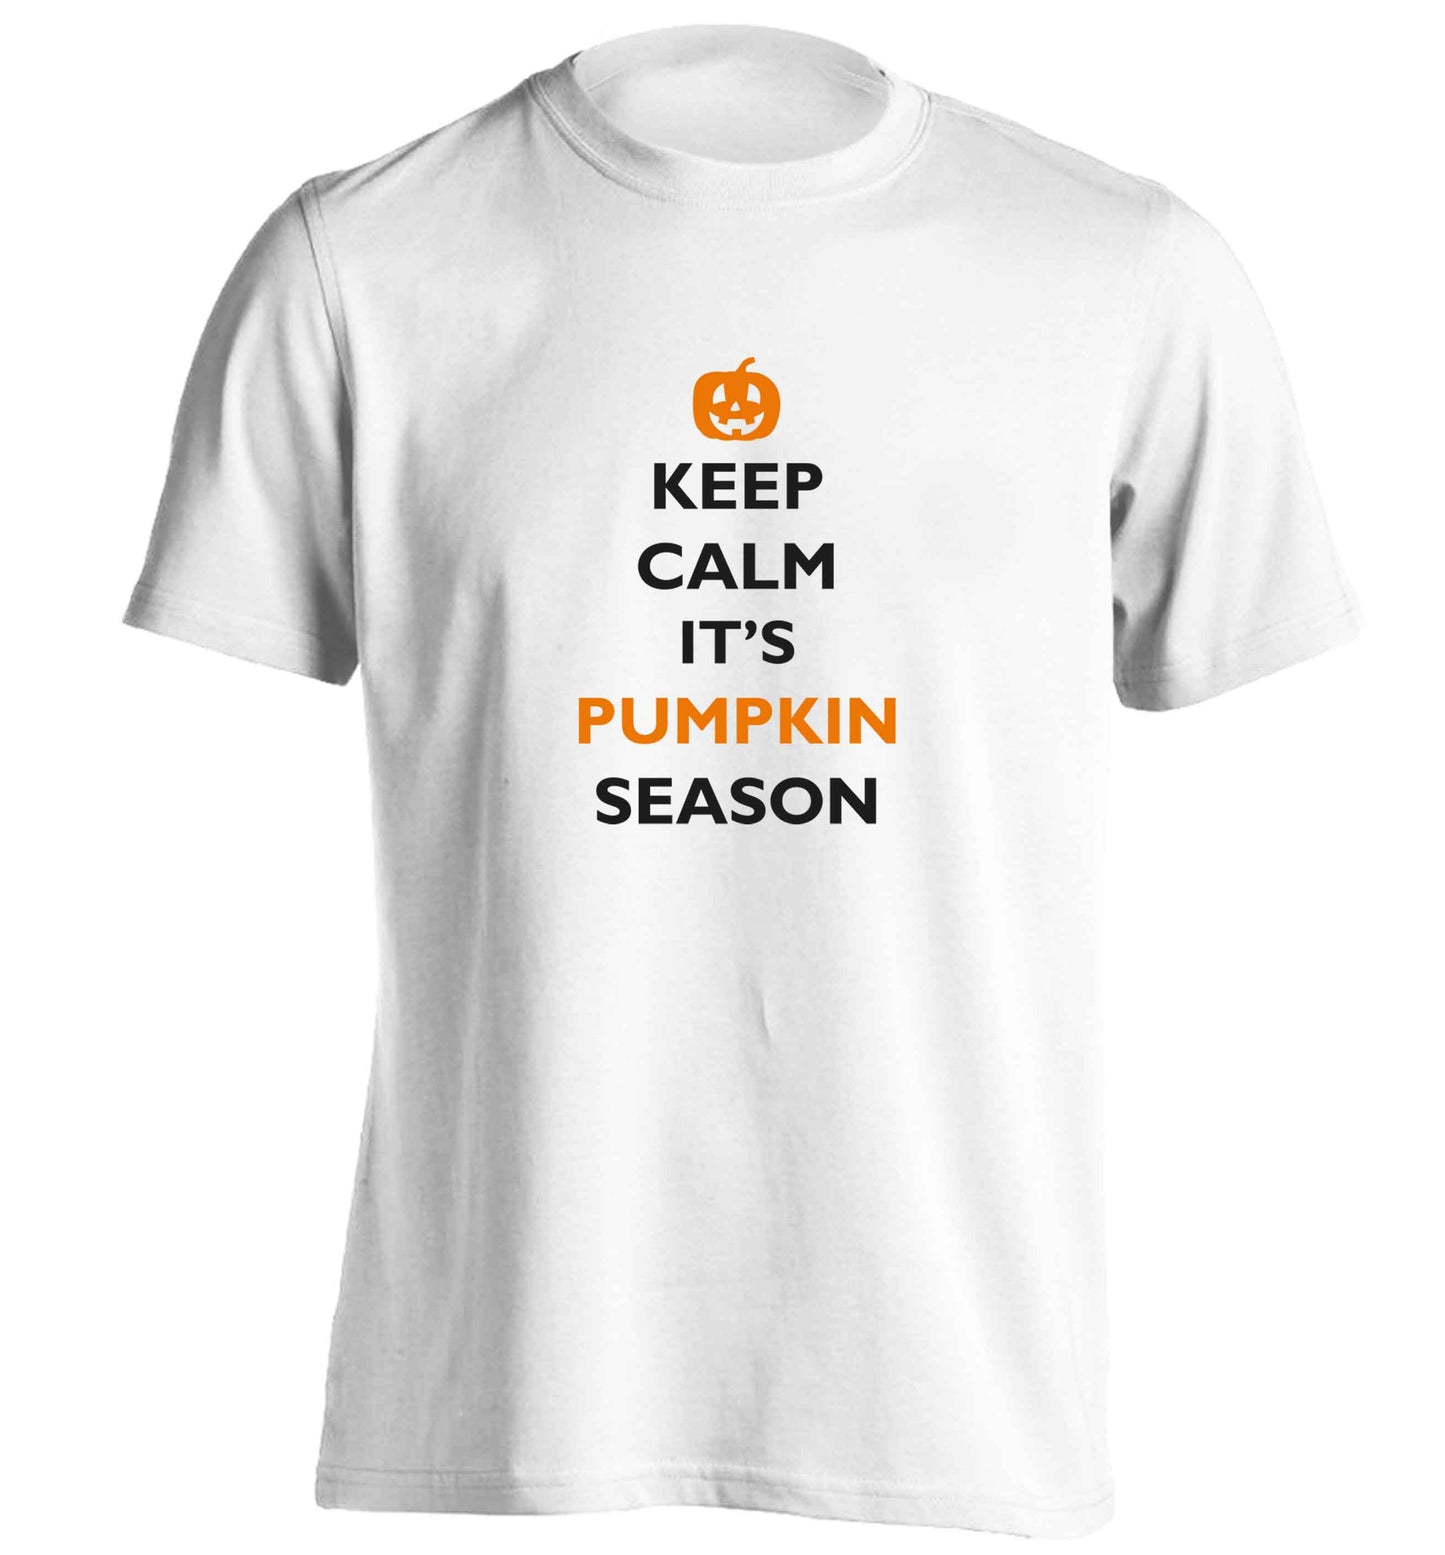 Calm Pumpkin Season adults unisex white Tshirt 2XL